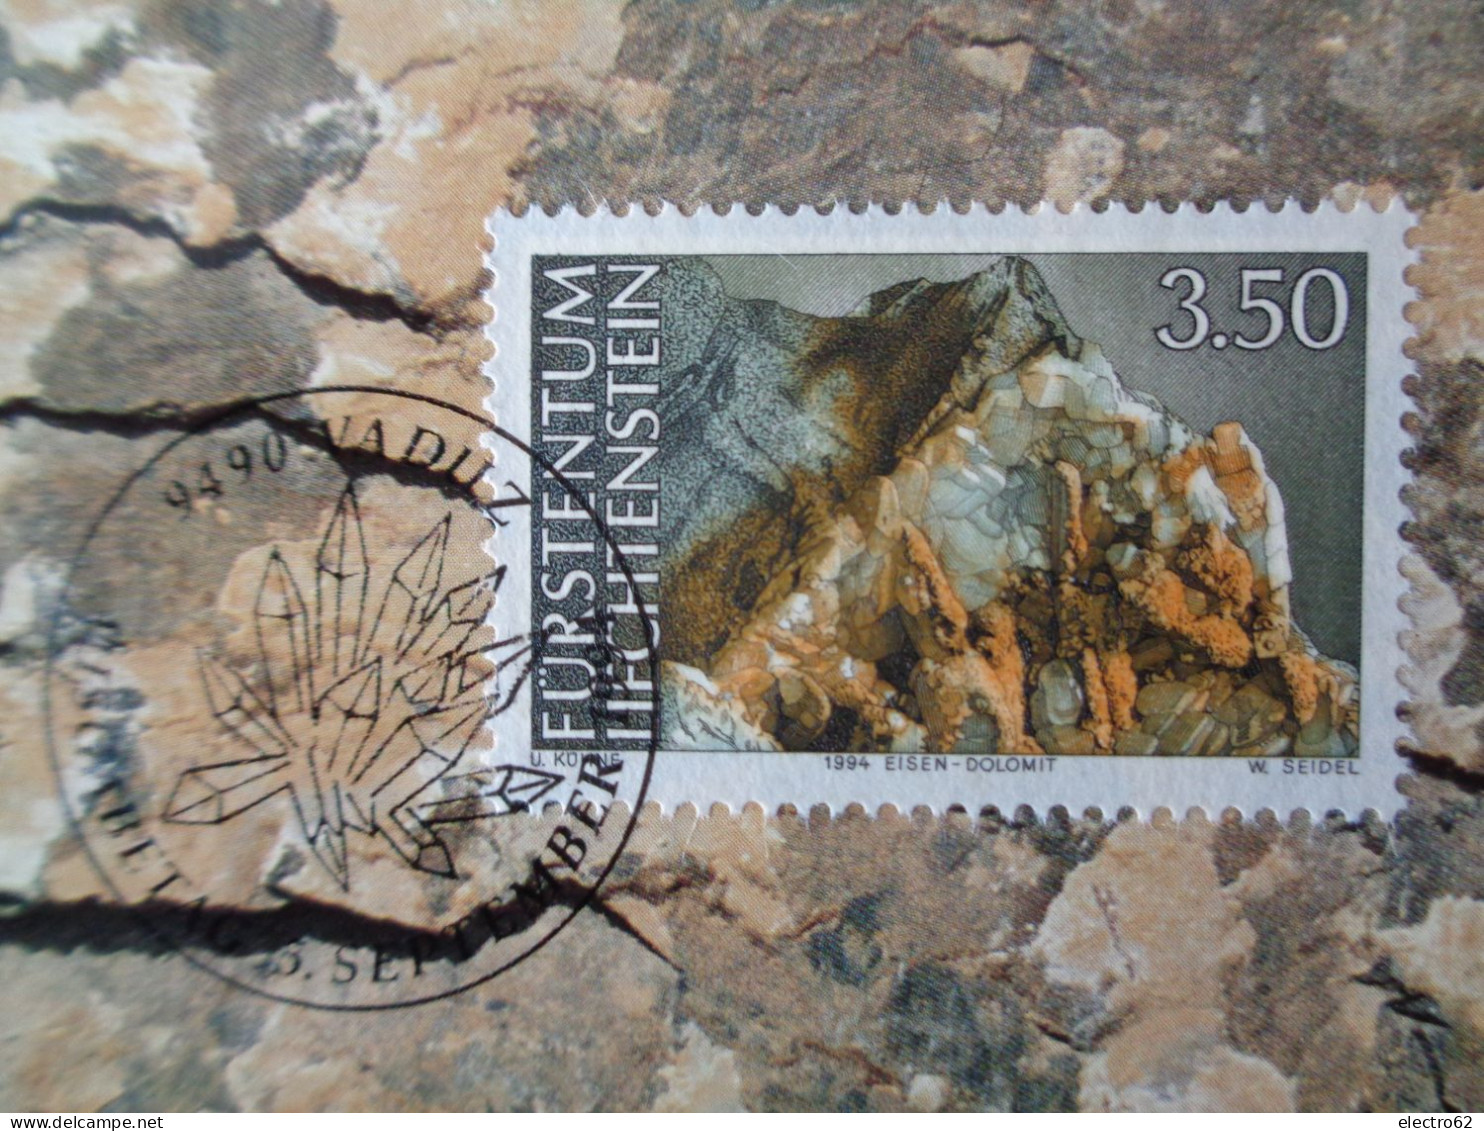 Fürstentum Liechtenstein Minéraux Dolomite Ferrugineuse Eisen-dolomit Dolomita Minerals Mineralien Minerales Minerali - Minéraux